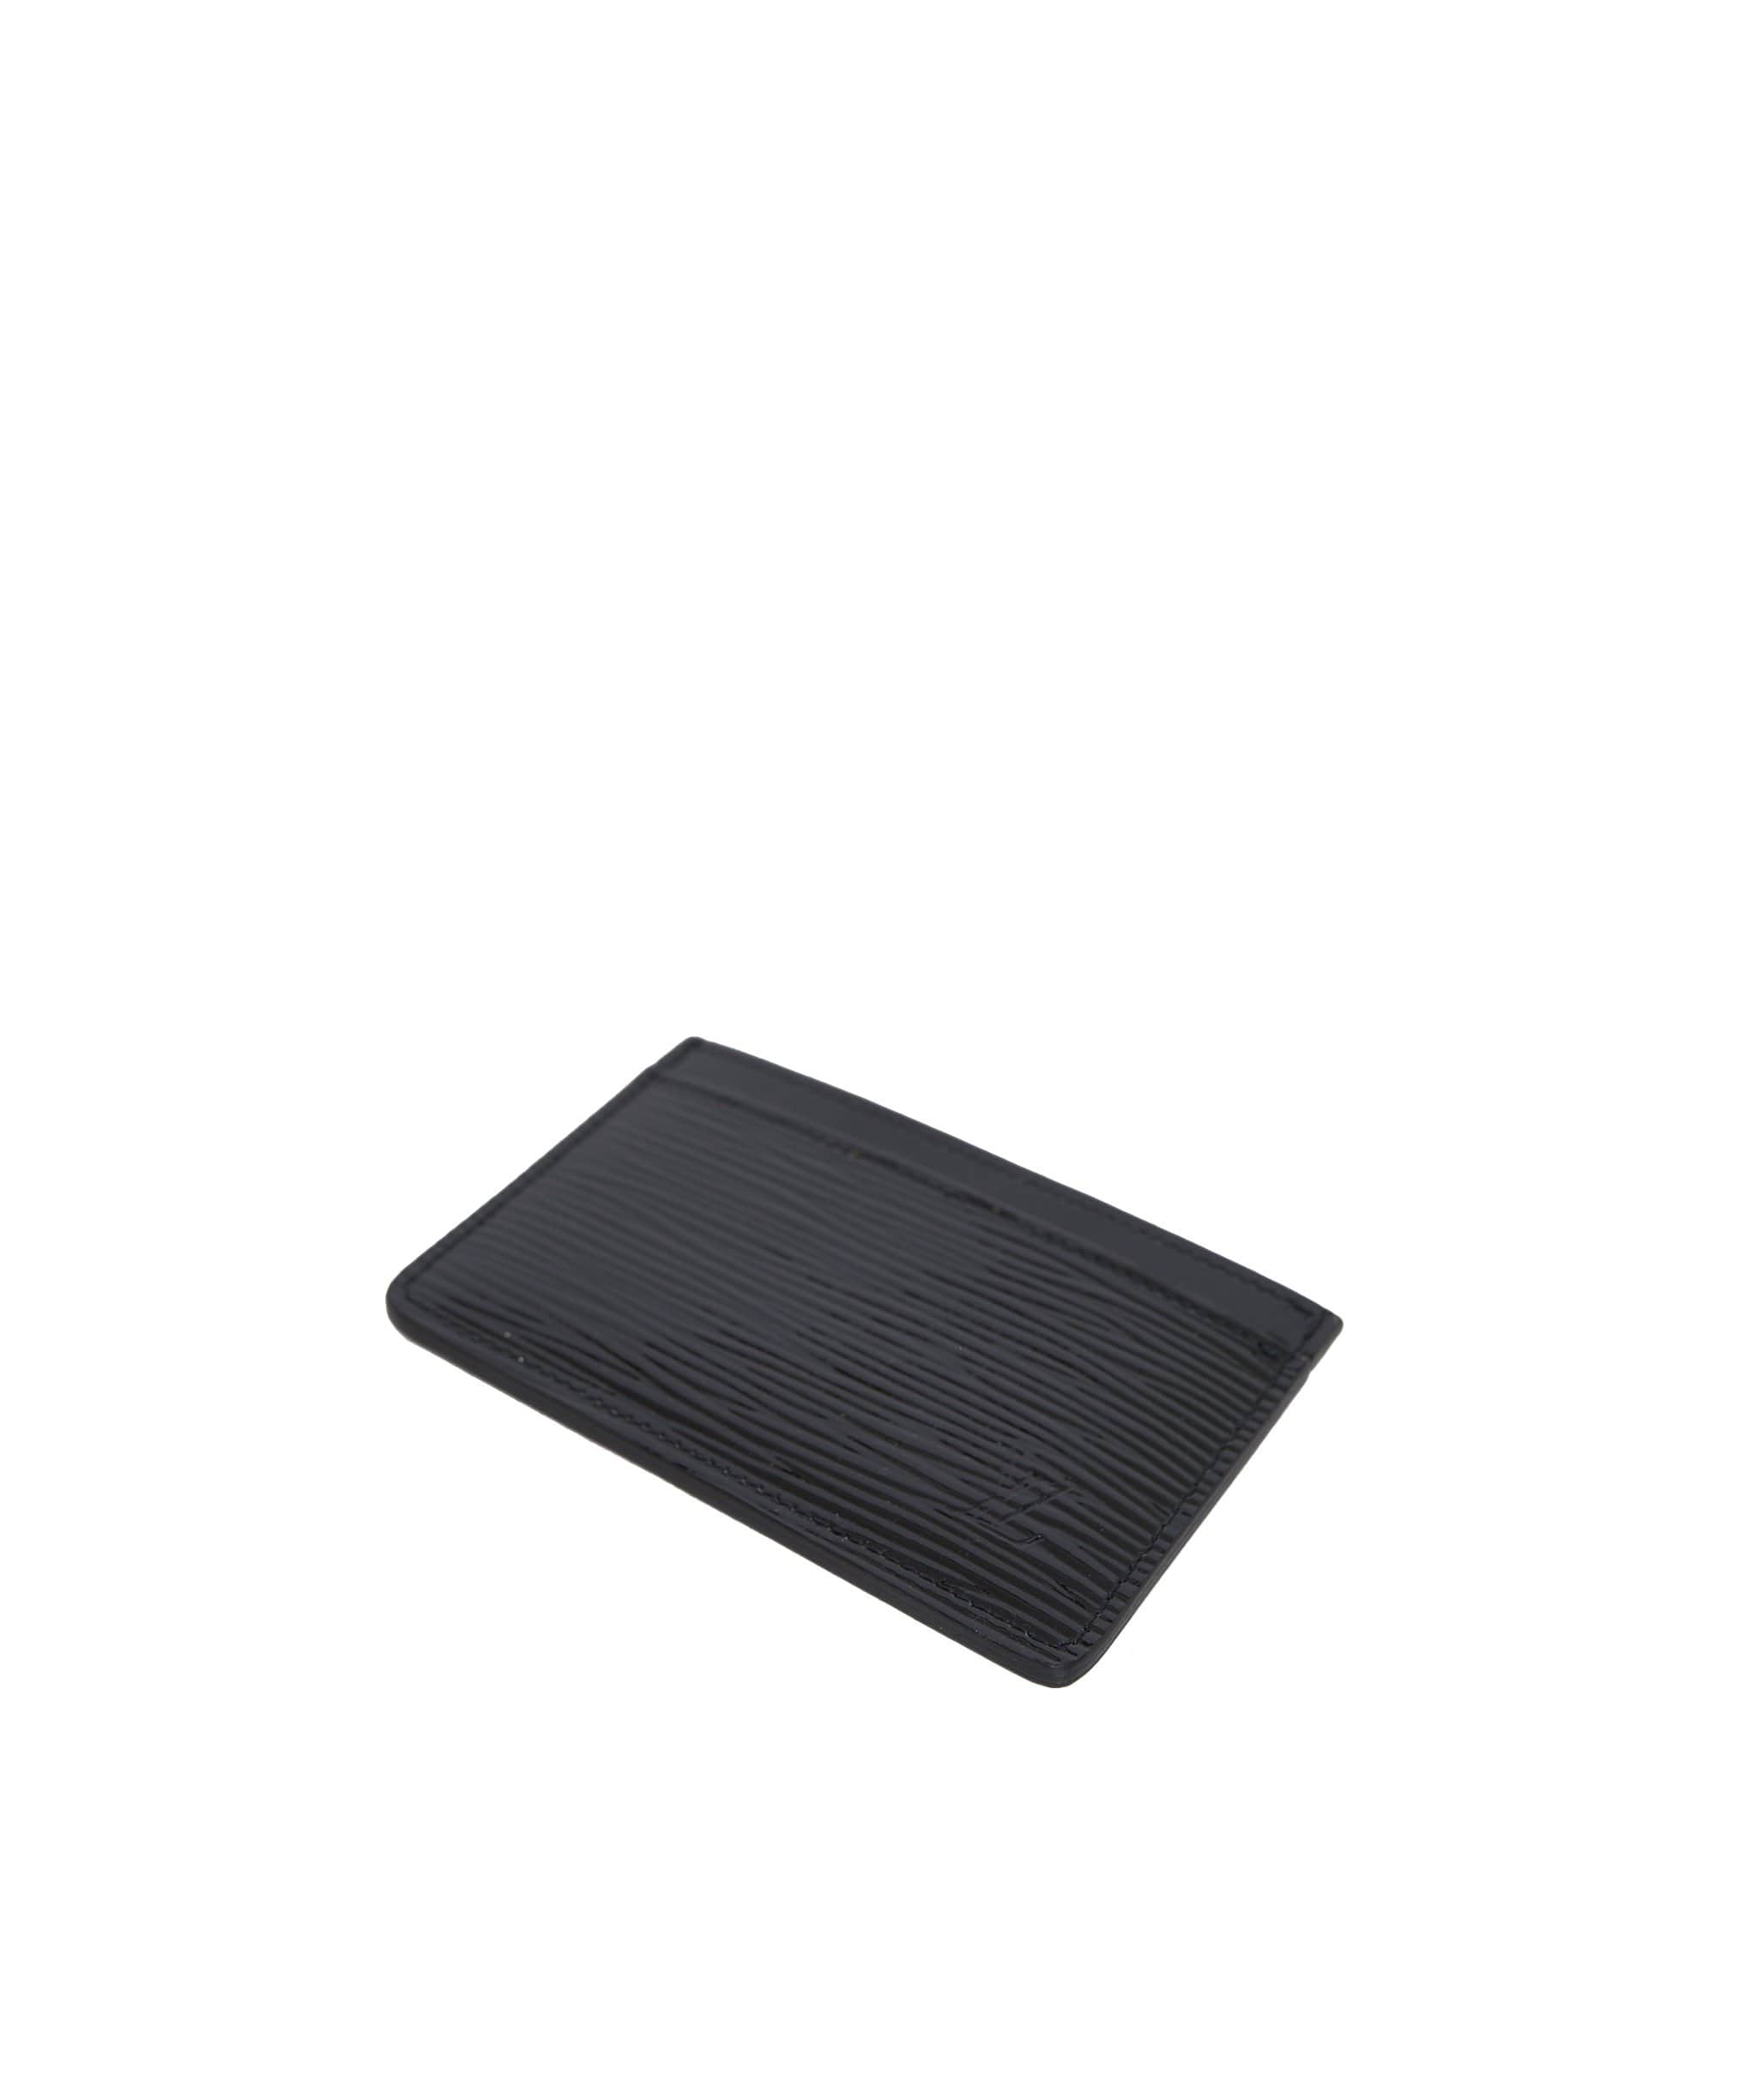 Louis Vuitton Louis Vuitton Patent black epi leather wallet  - ADL1093